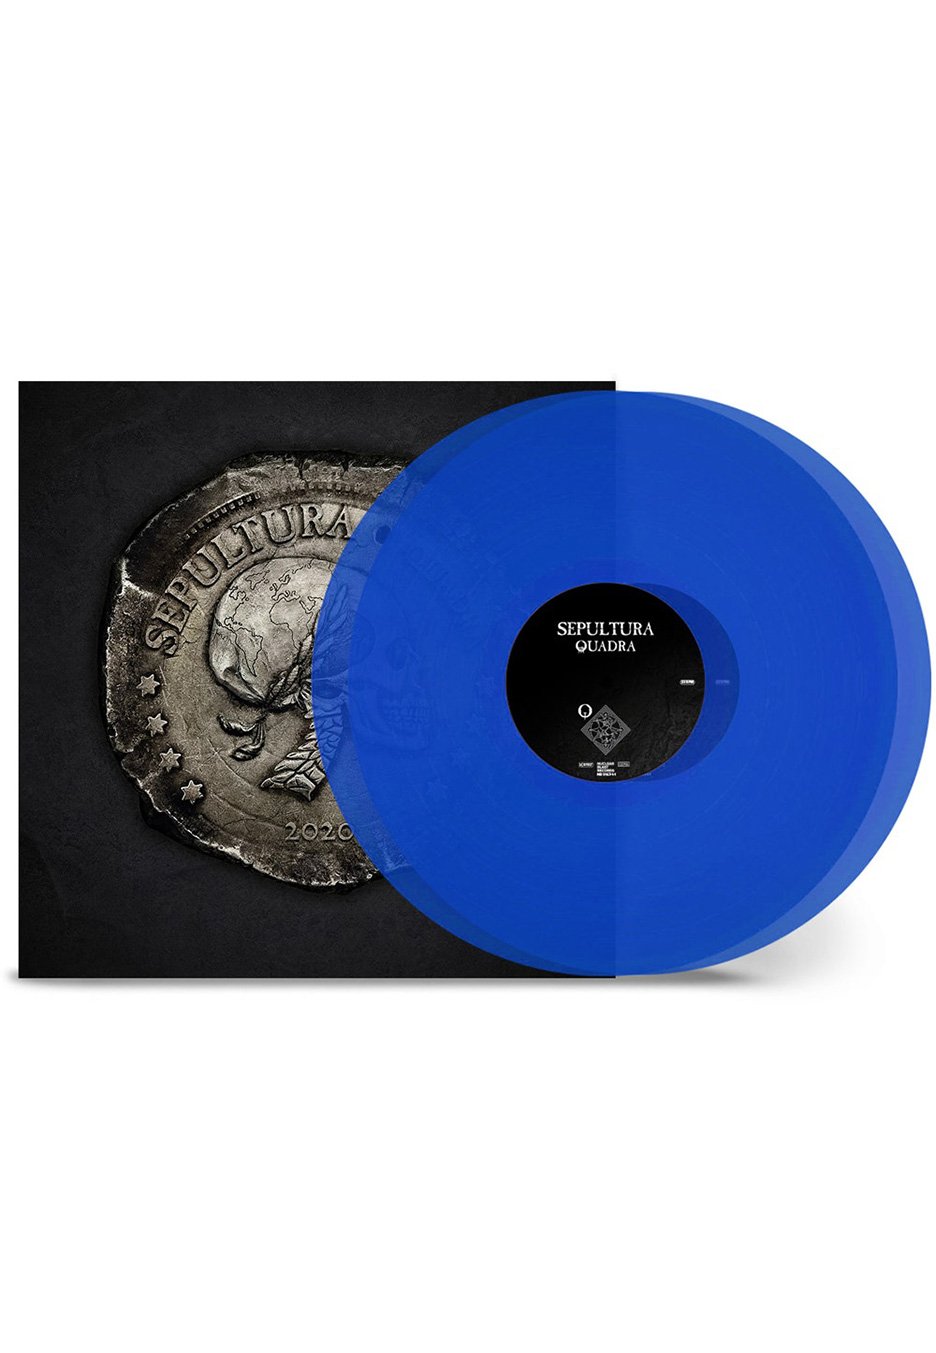 Sepultura - Quarta Transparent Blue - Colored 2 Vinyl